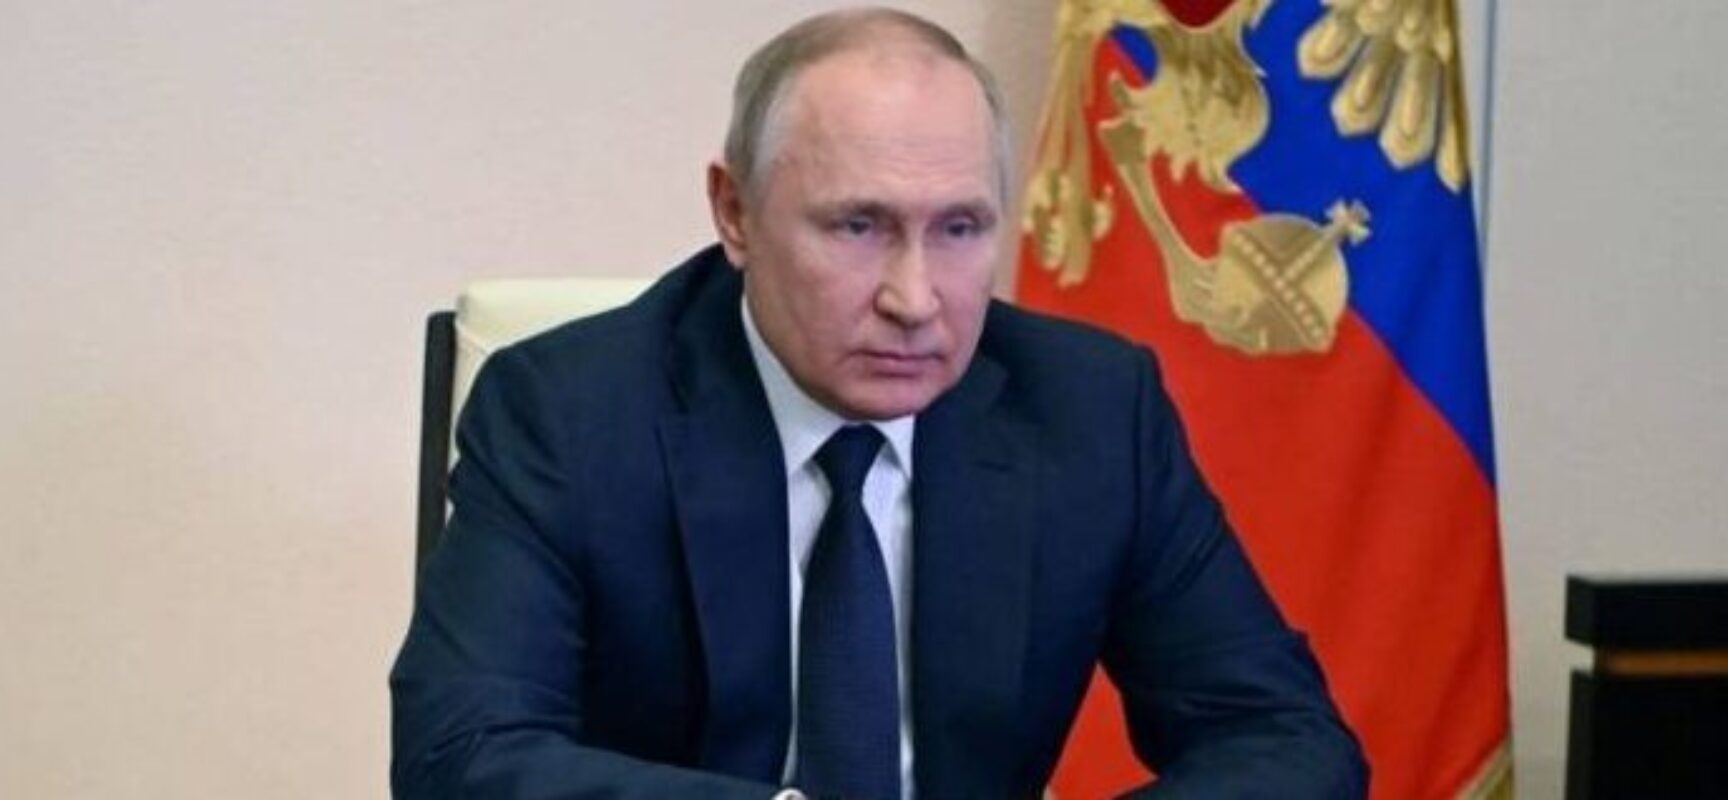 TV estatal russa exibe entrevista com Vladimir Putin